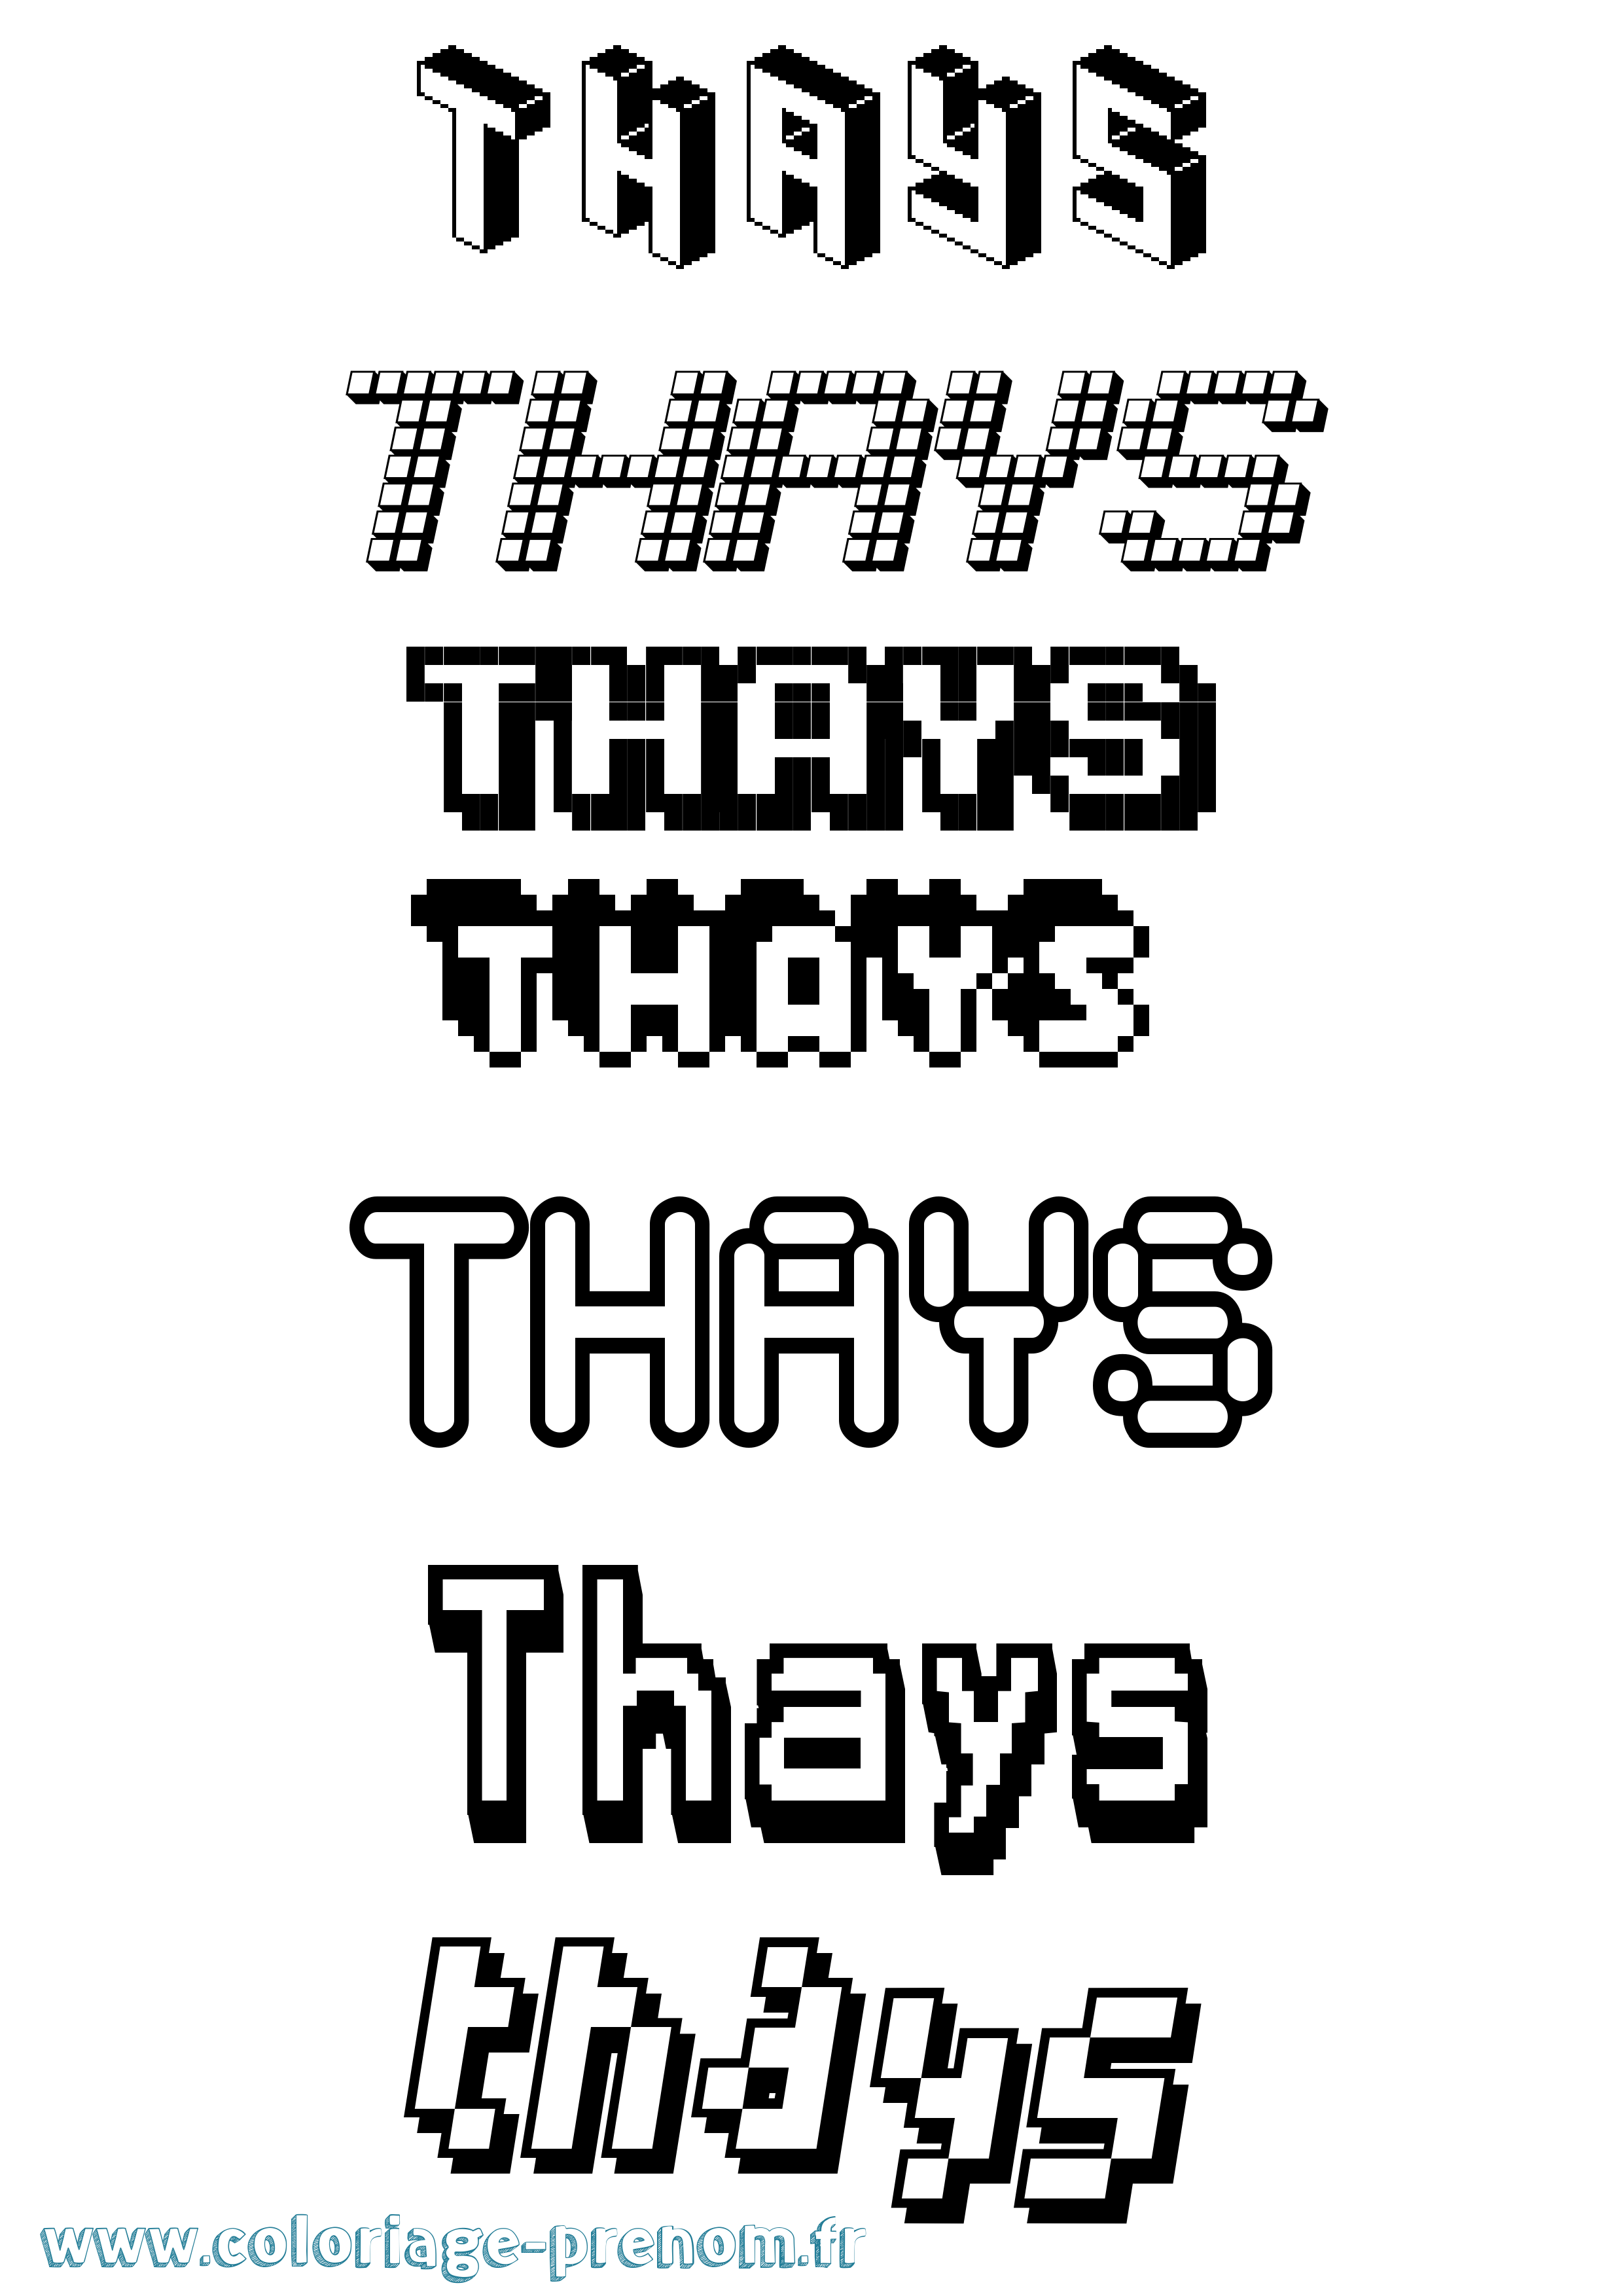 Coloriage prénom Thays Pixel